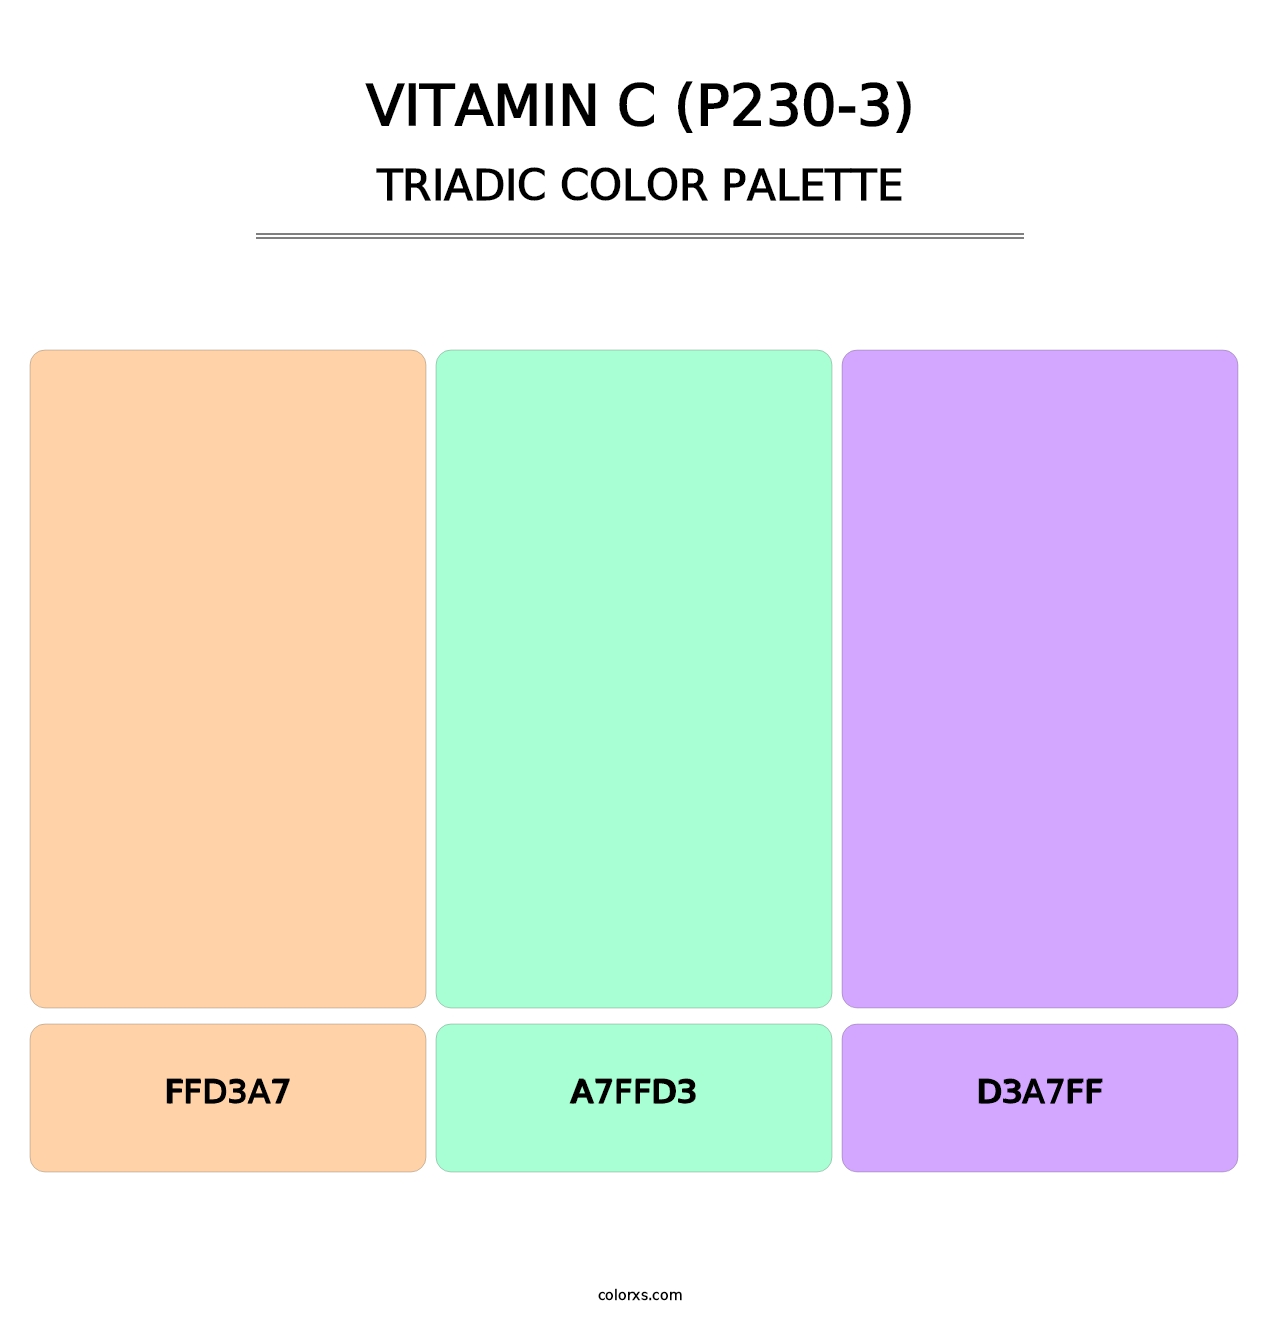 Vitamin C (P230-3) - Triadic Color Palette